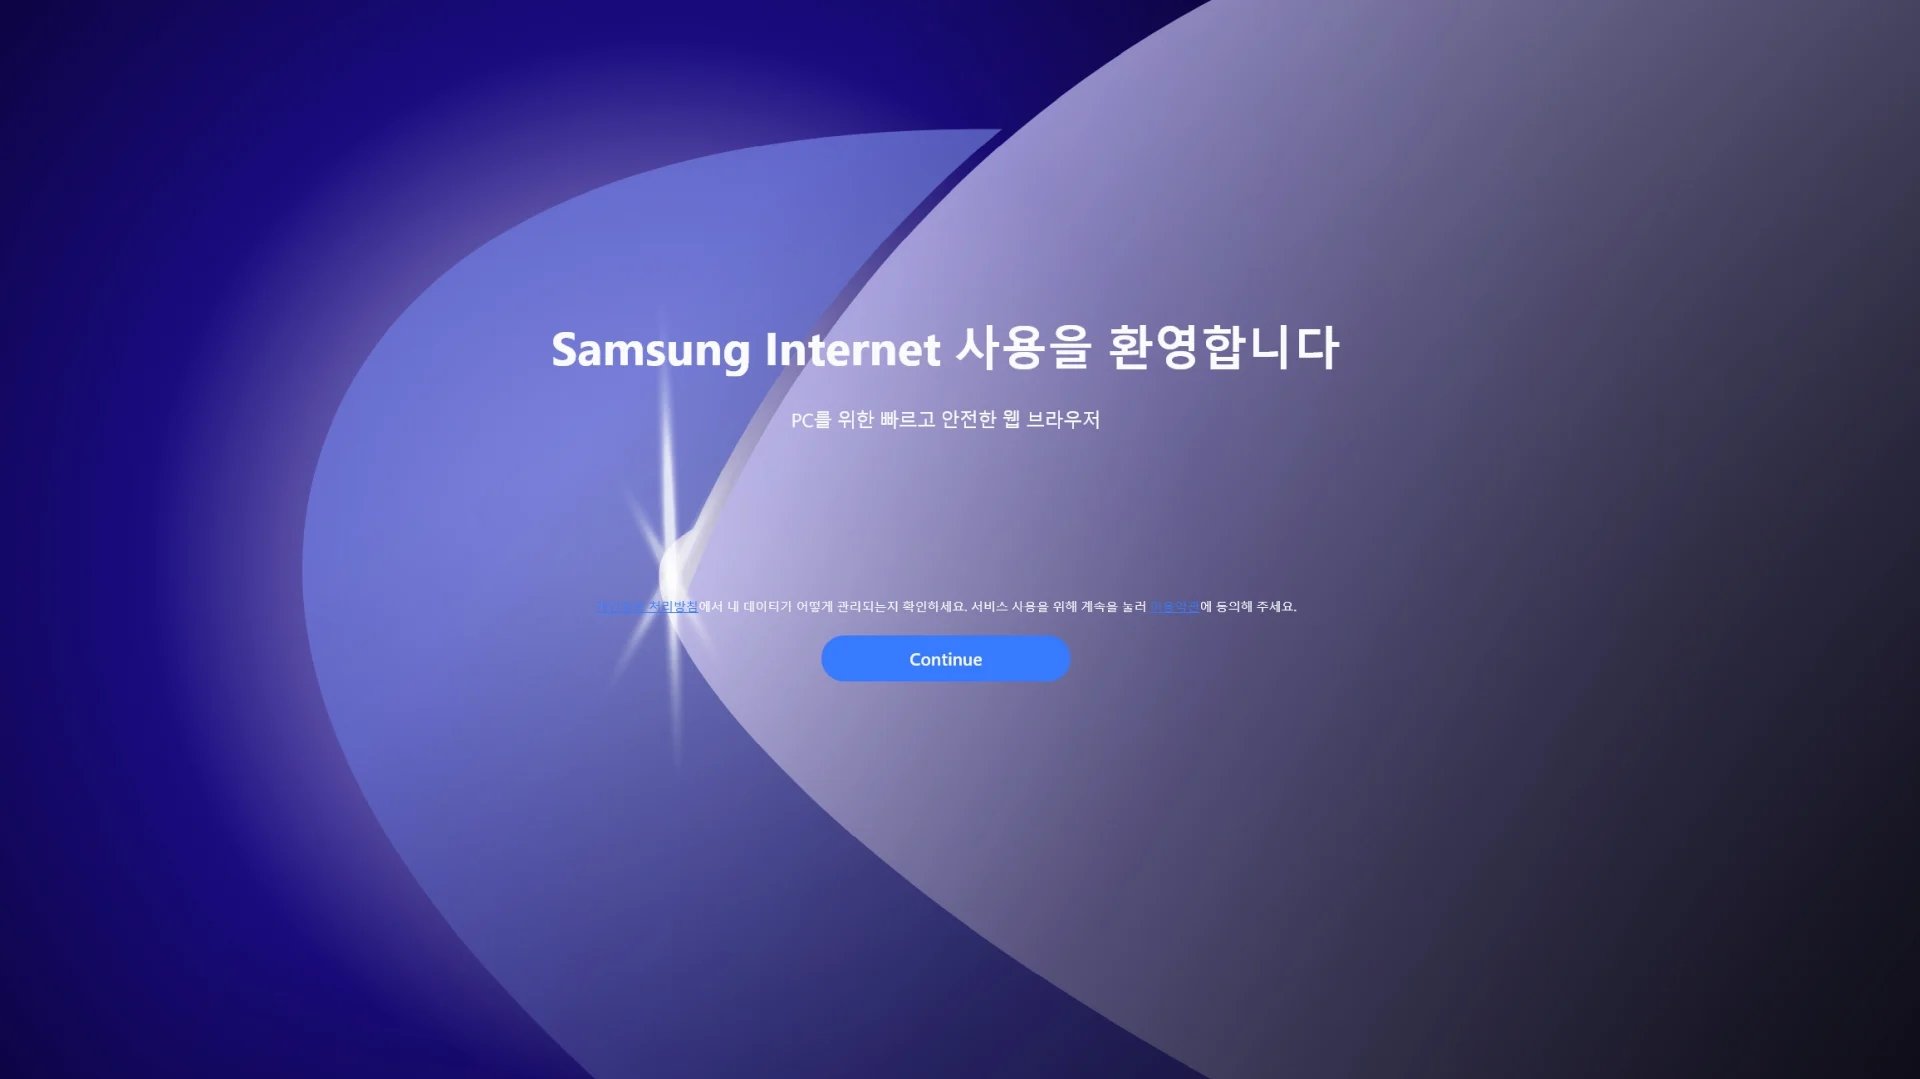 Samsung Internet para Windows desaponta no desempenho